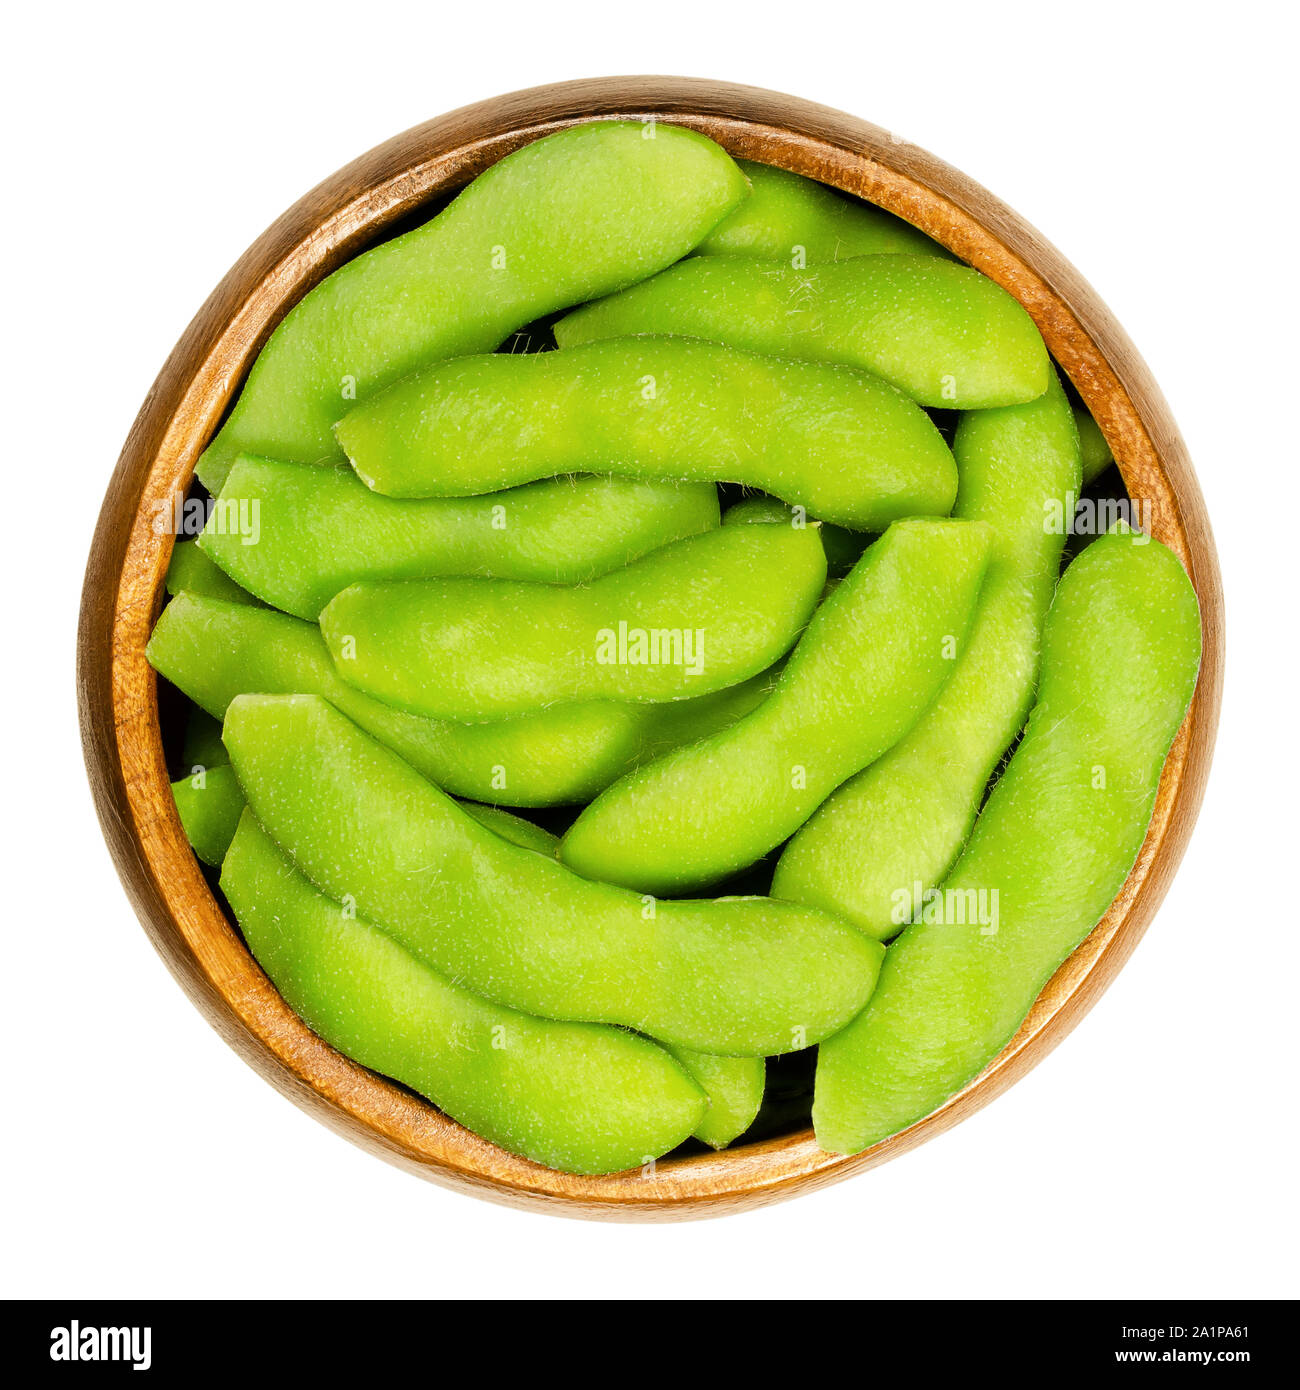 Edamame, soja vert dans le pod, dans bol en bois. Les graines de soja immatures, aussi Maodou. Glycine max, une légumineuse, comestibles après cuisson. Source de protéines. Banque D'Images